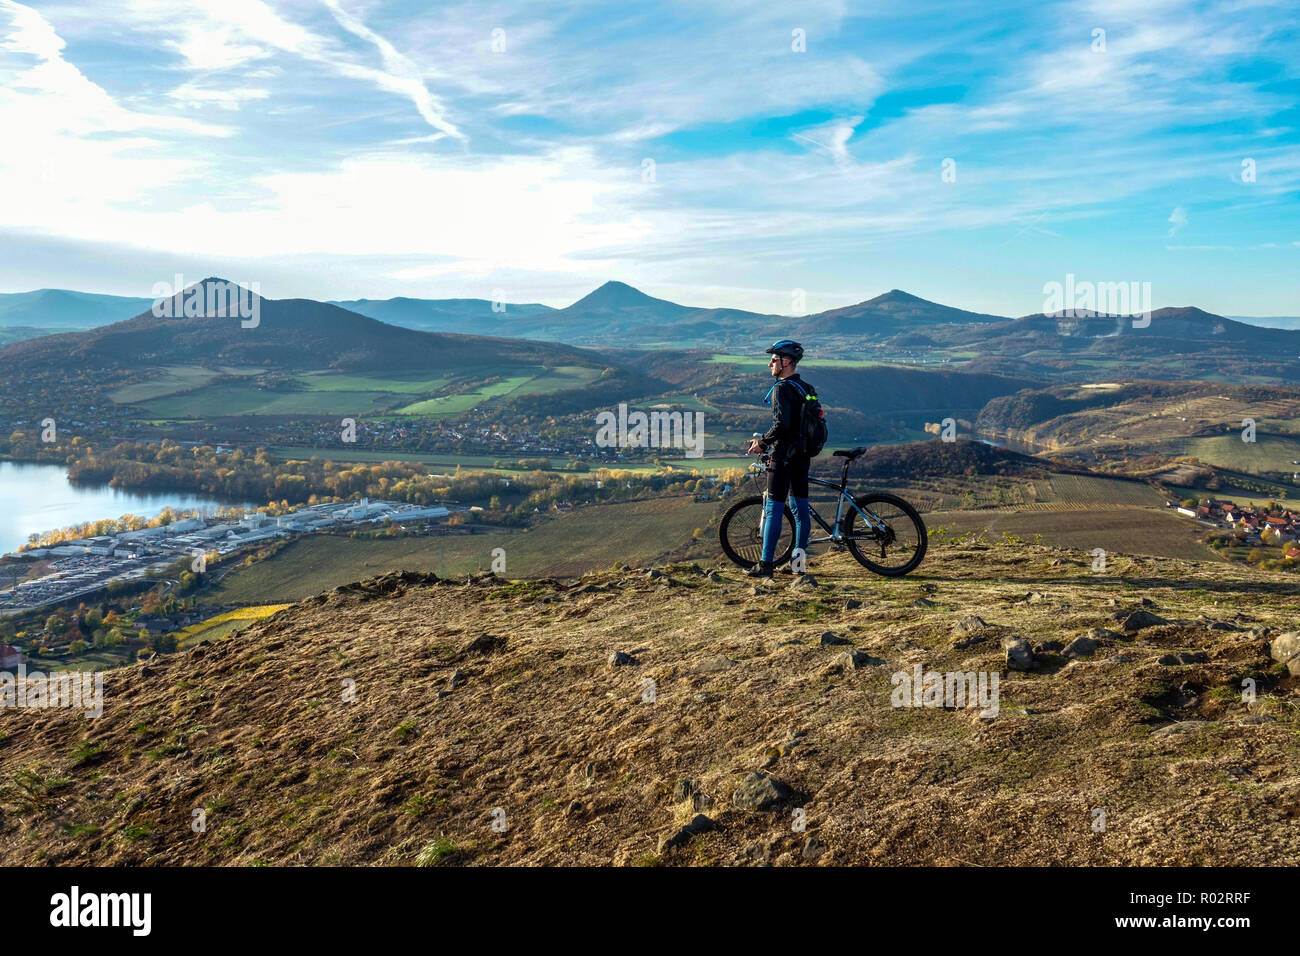 Un motard fasciné par la vue sur la campagne tchèque Vallée de l'Elbe les montagnes de Bohême centrale, un homme surplombant le paysage tchèque, un vélo de route seul Banque D'Images